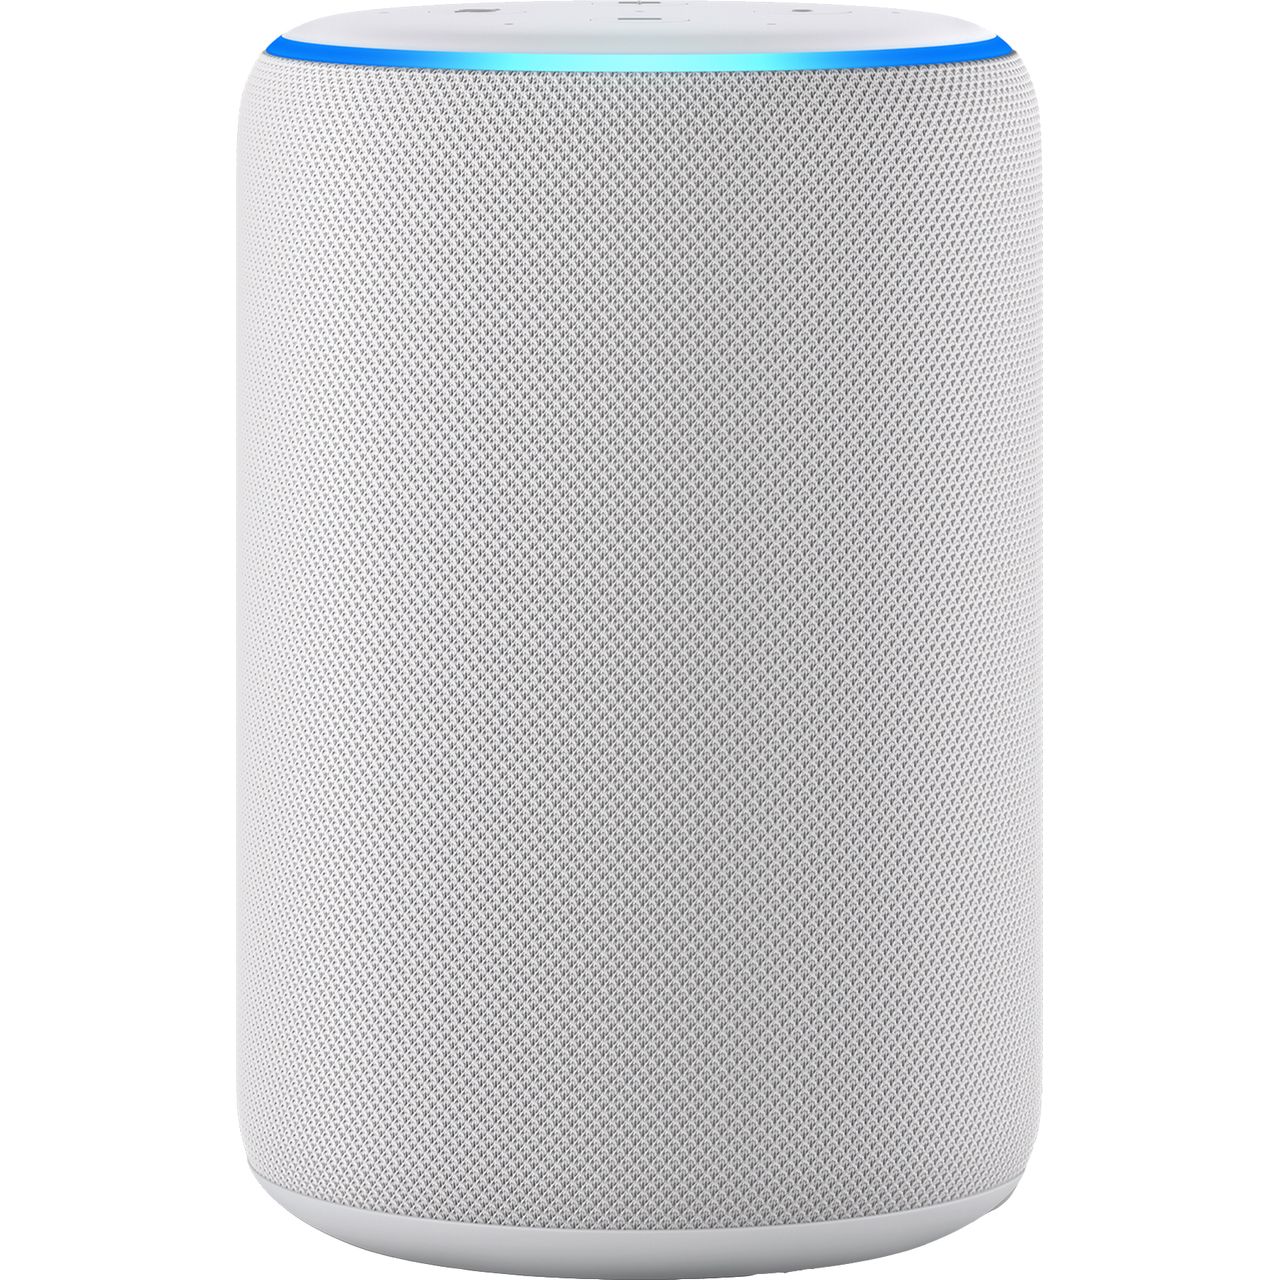 Amazon Echo (3rd Gen) Smart Speaker with Alexa Review